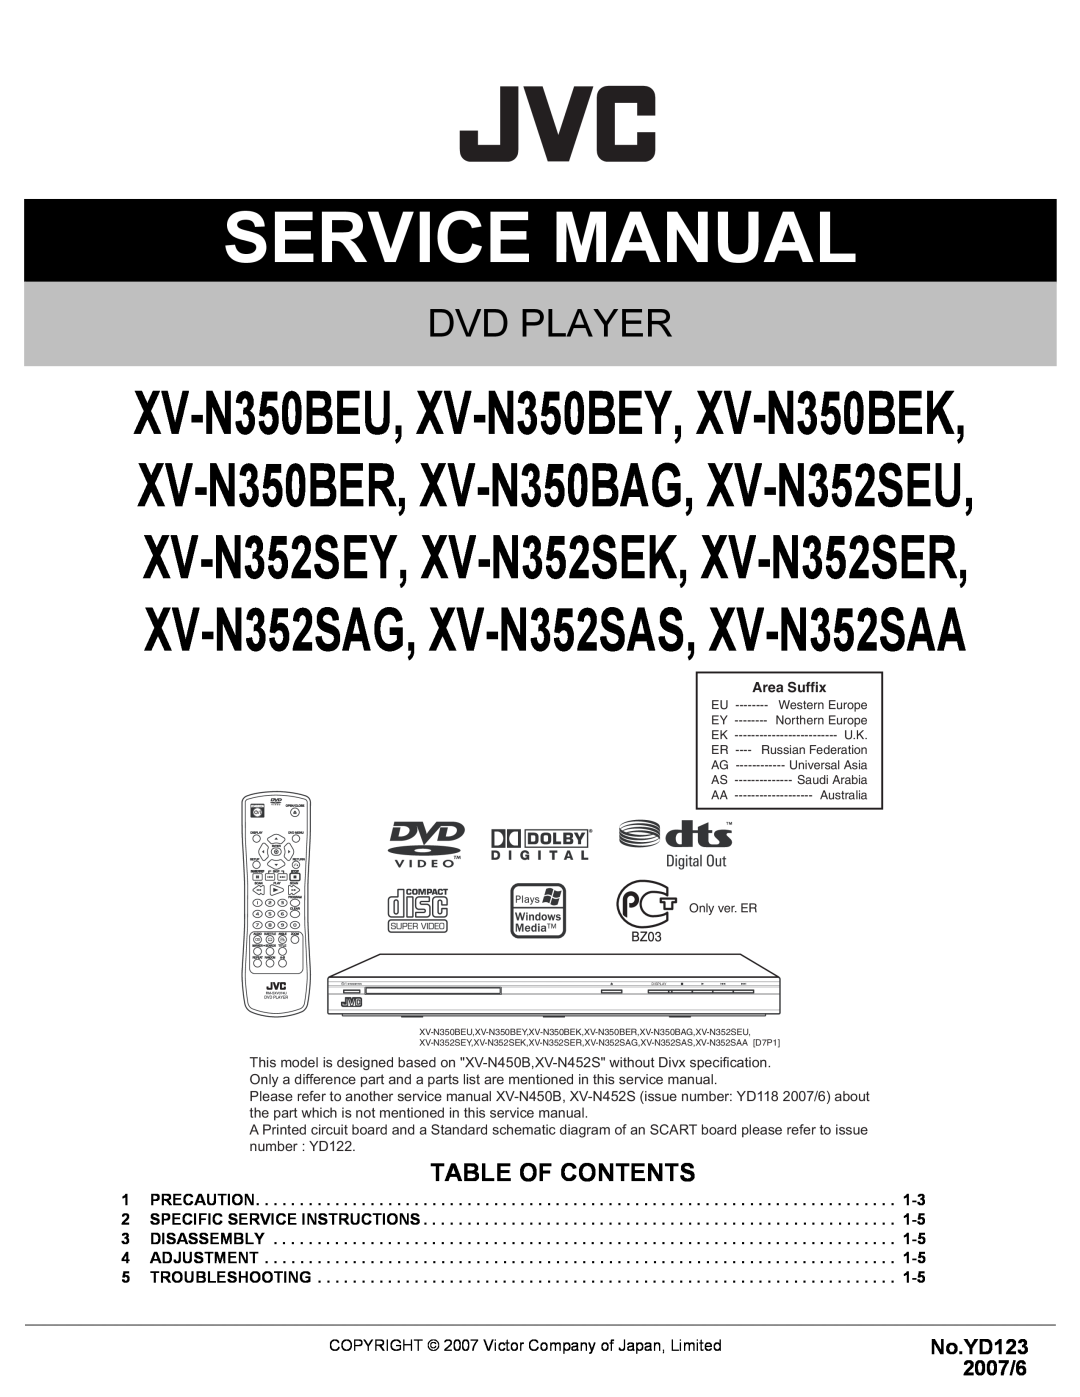 RCA XV-N352SEU, XV-N352SEY, XV-N352SER service manual Table Of Contents, Service Manual, Dvd Player, No.YD123 2007/6 